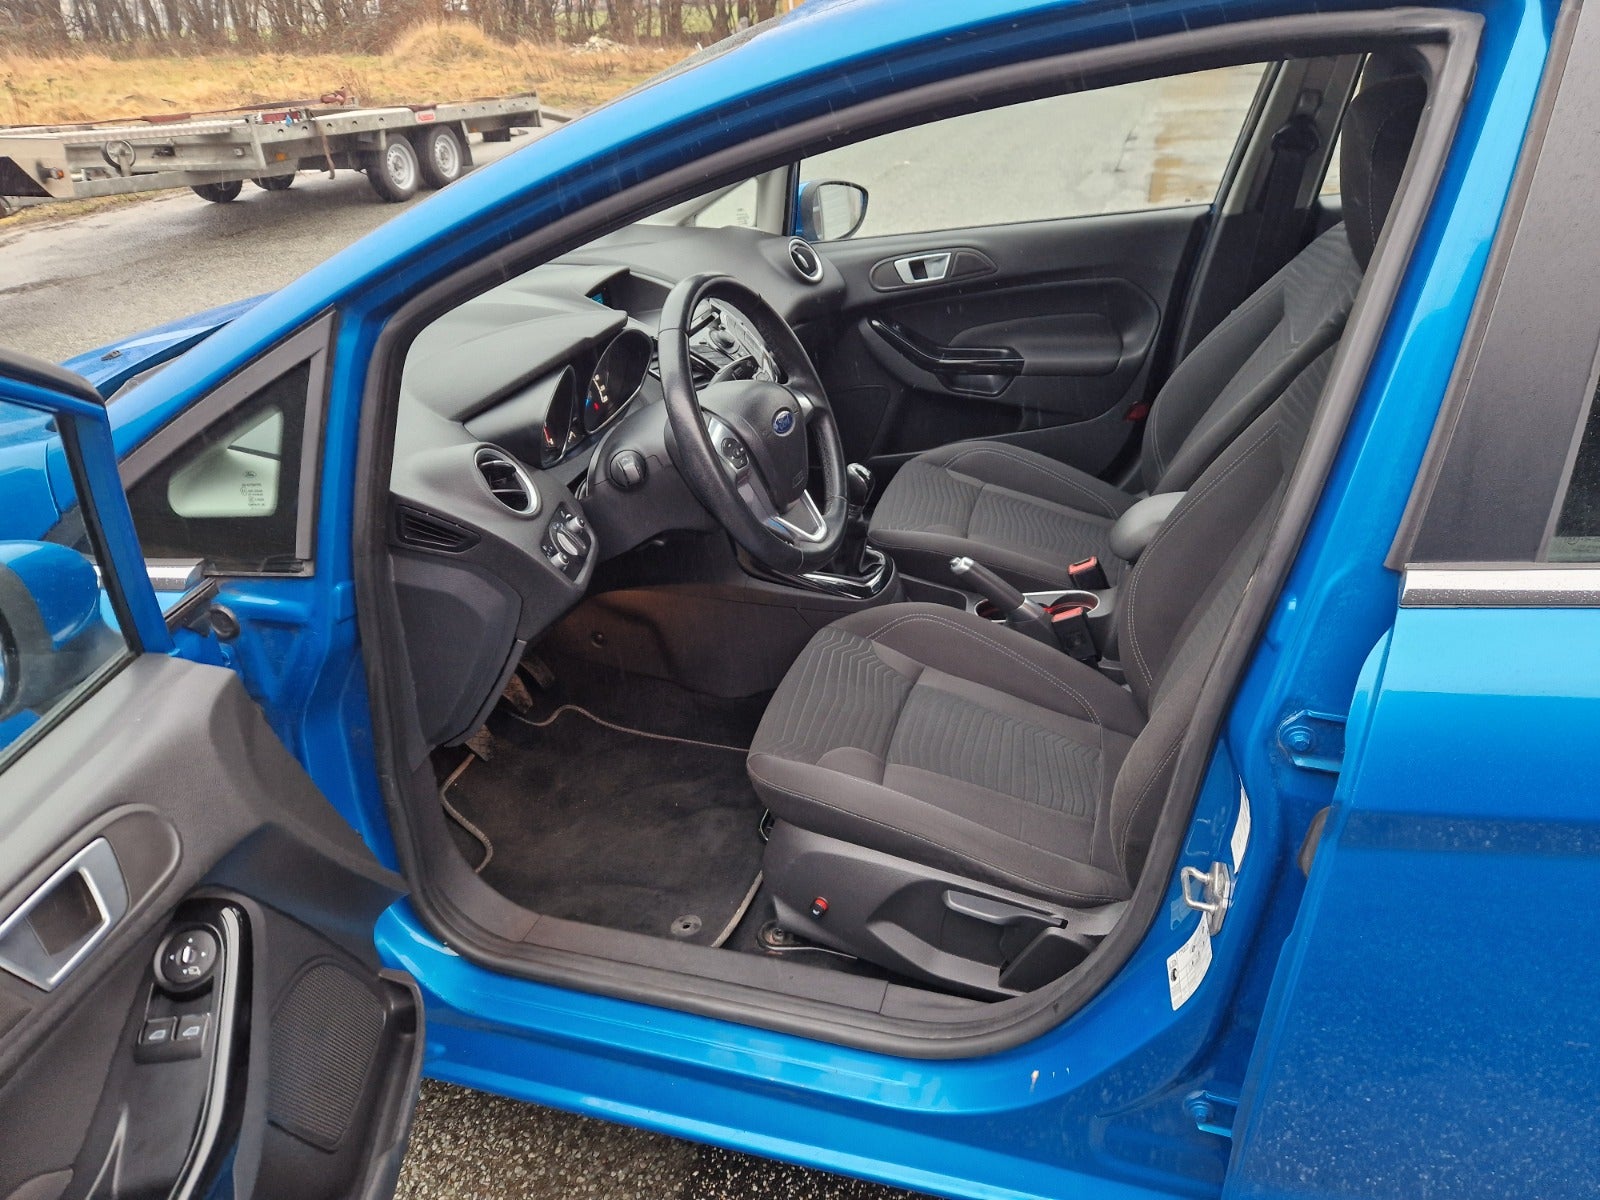 Ford Fiesta 1,0 SCTi 100 Titanium Benzin modelår 2013 km